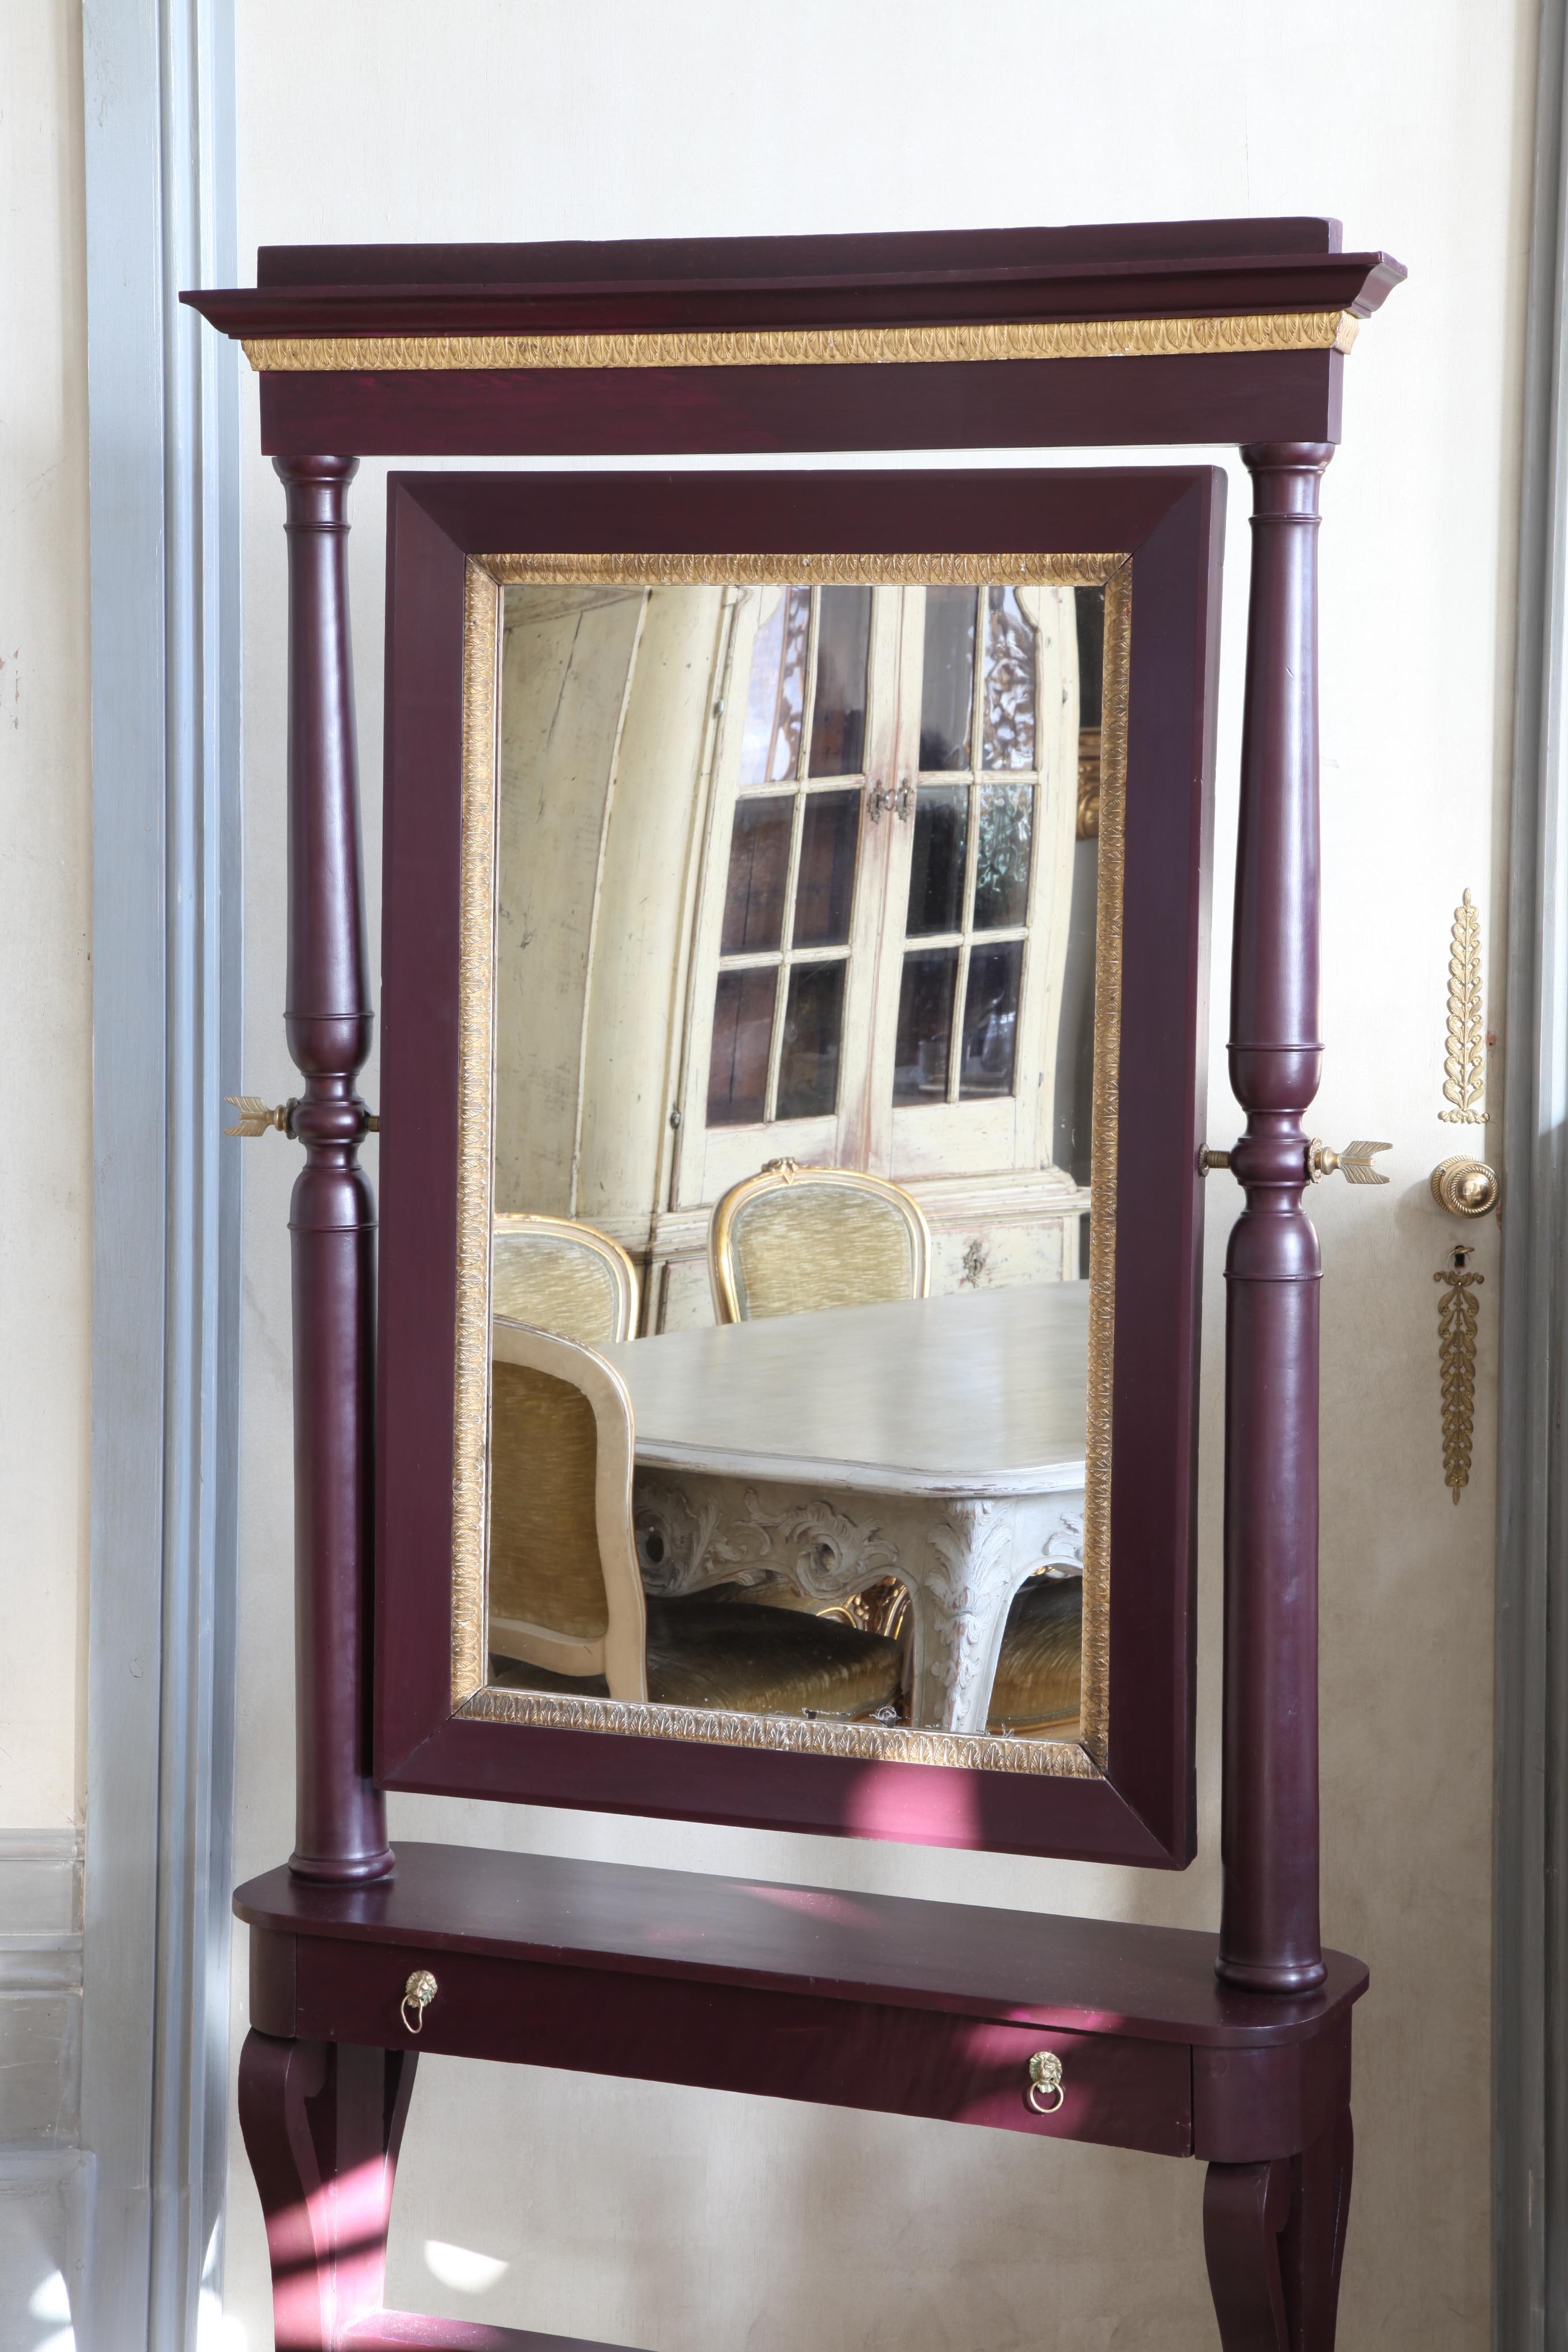 Elegant miroir de cheval italien du XIXe siècle, en acajou massif et plaqué, avec des moulures en bois doré sculptées à la main et des ferrures en bronze doré. Le miroir est équipé d'un tiroir soigné.
Peint dans une laque d'un violet profond.